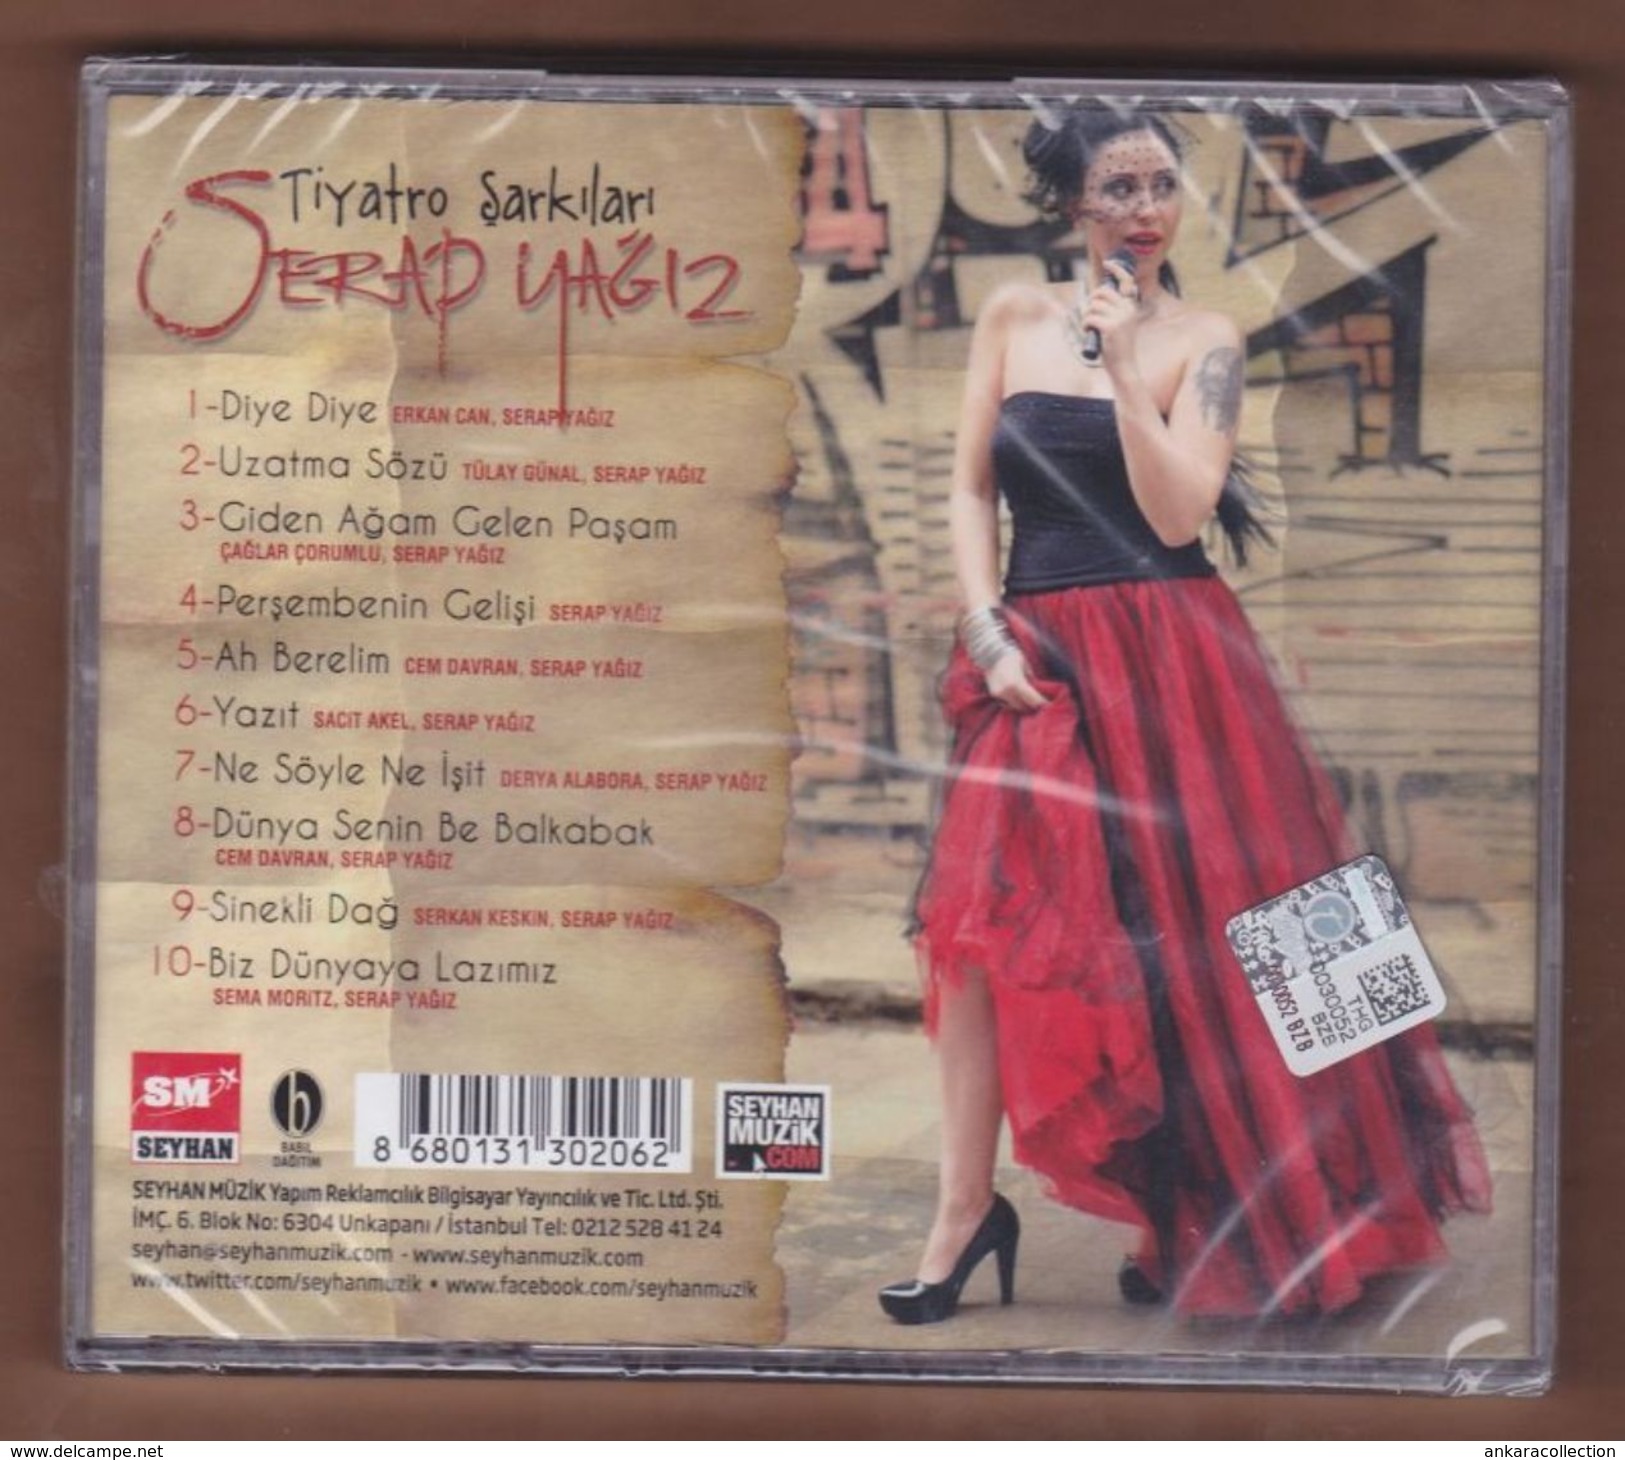 AC -  Serap Yağız Tiyatro şarkıları BRAND NEW TURKISH MUSIC CD - Música Del Mundo